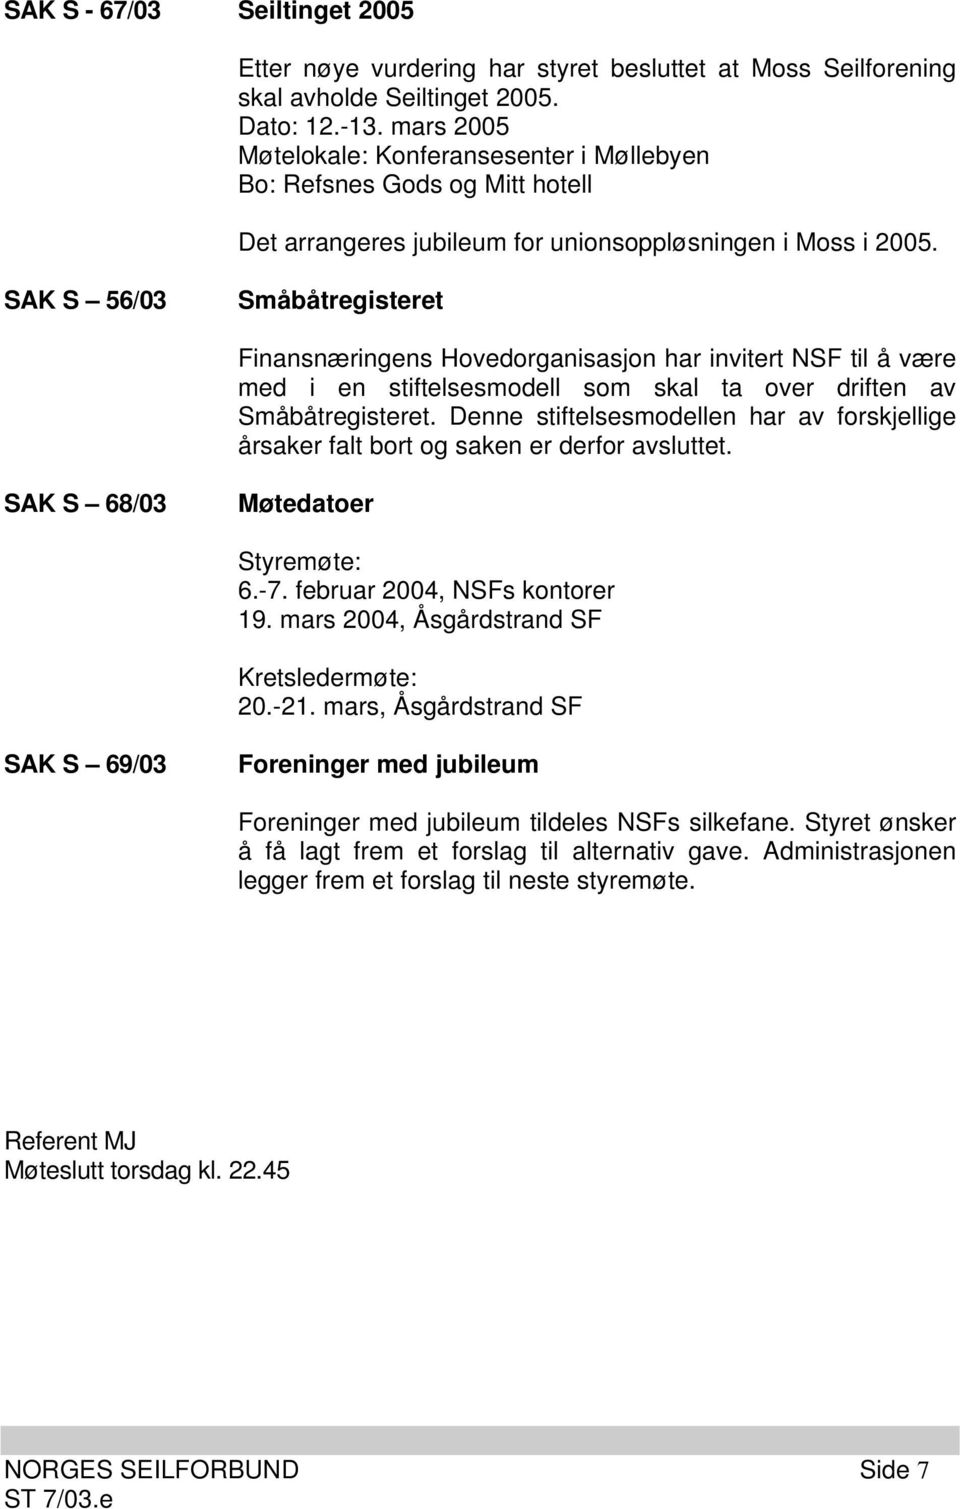 SAK S 56/03 Småbåtregisteret Finansnæringens Hovedorganisasjon har invitert NSF til å være med i en stiftelsesmodell som skal ta over driften av Småbåtregisteret.